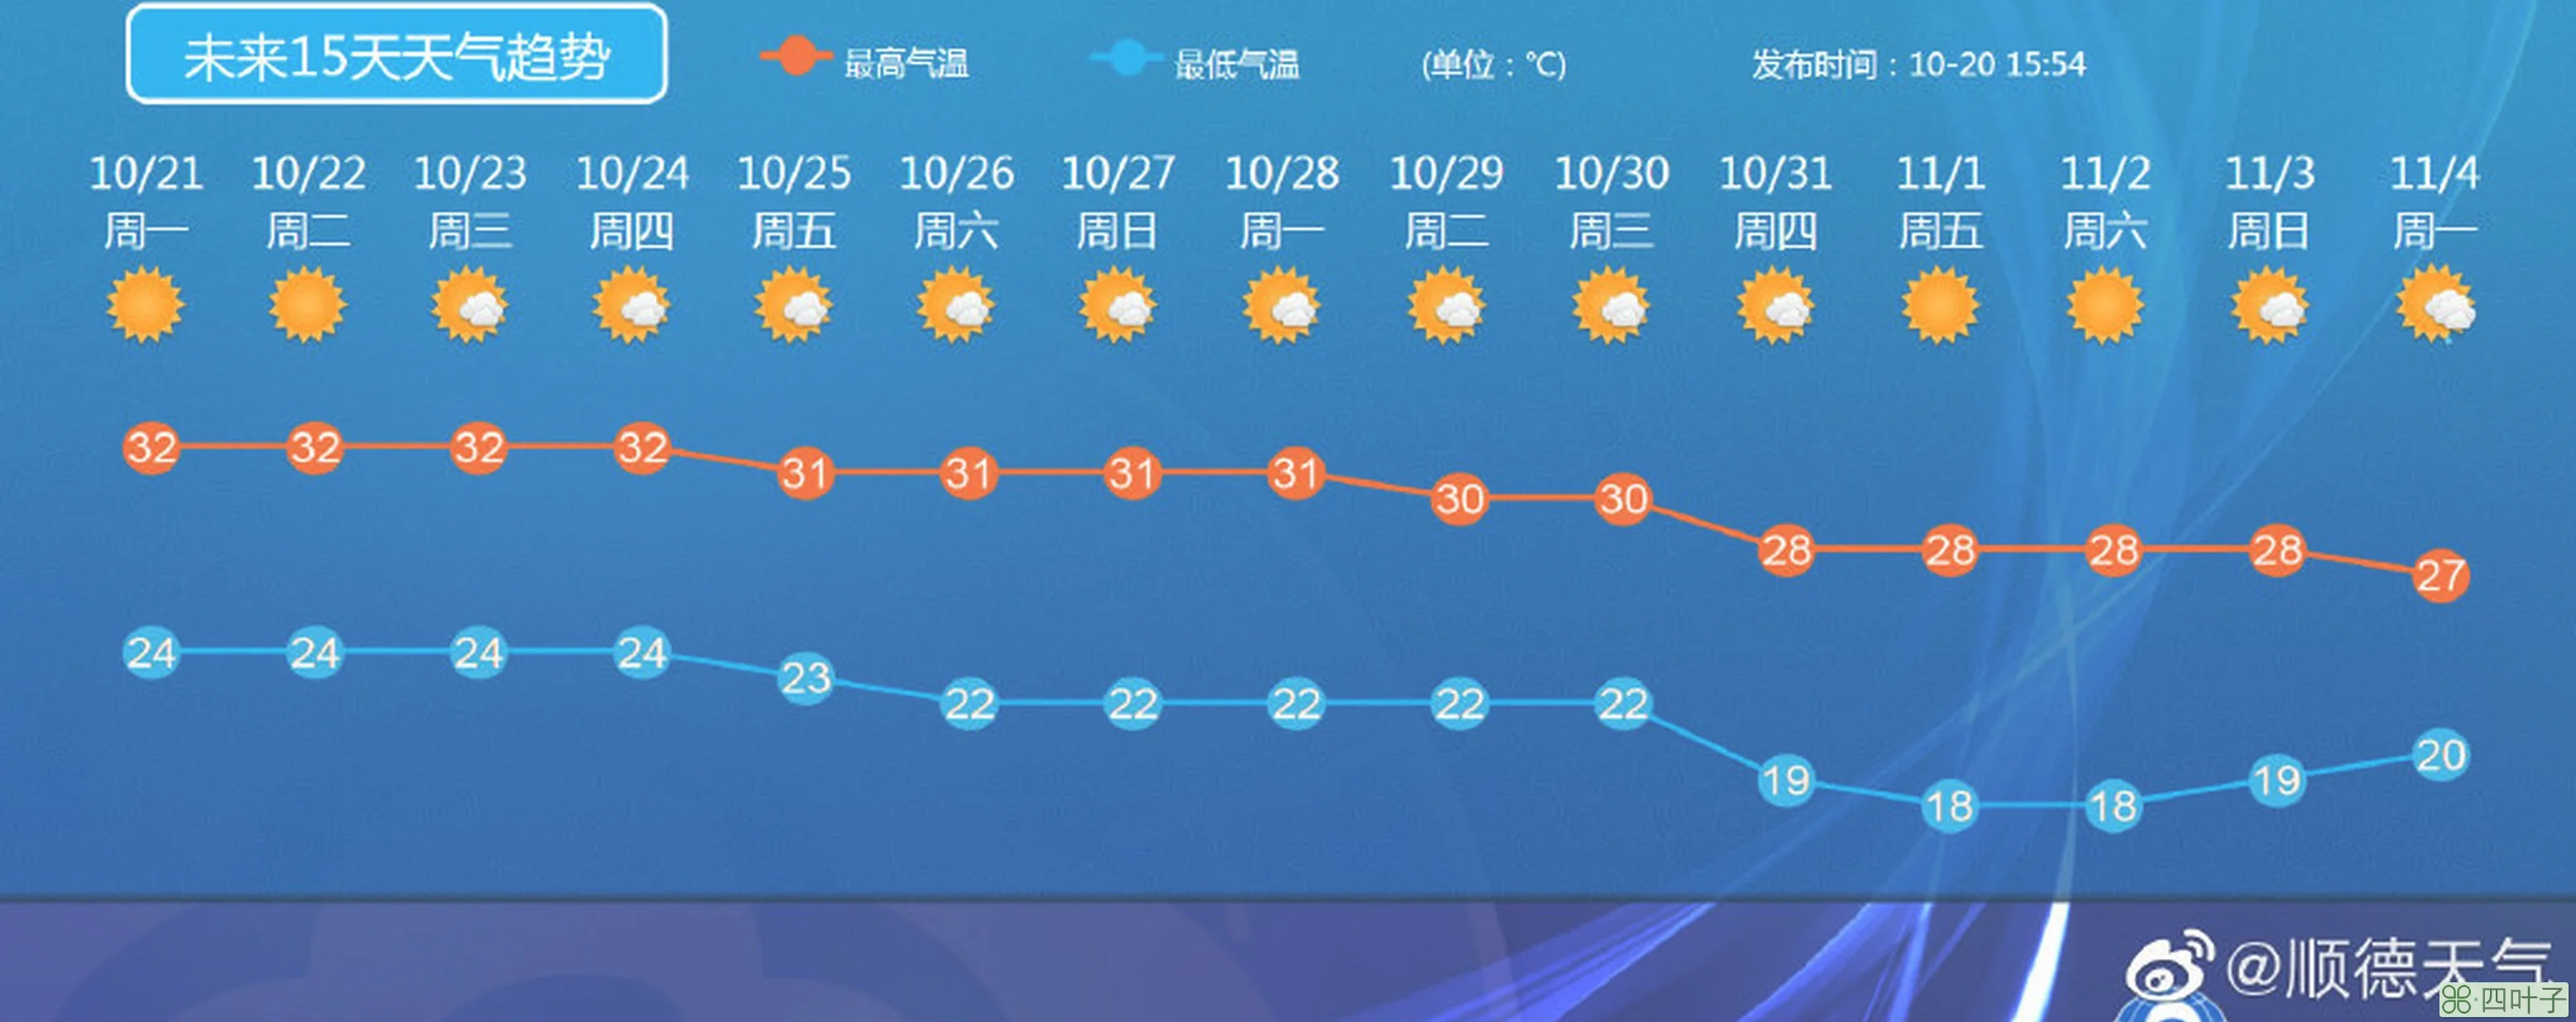 黄州未来十五天天气黄州天气预报每小时